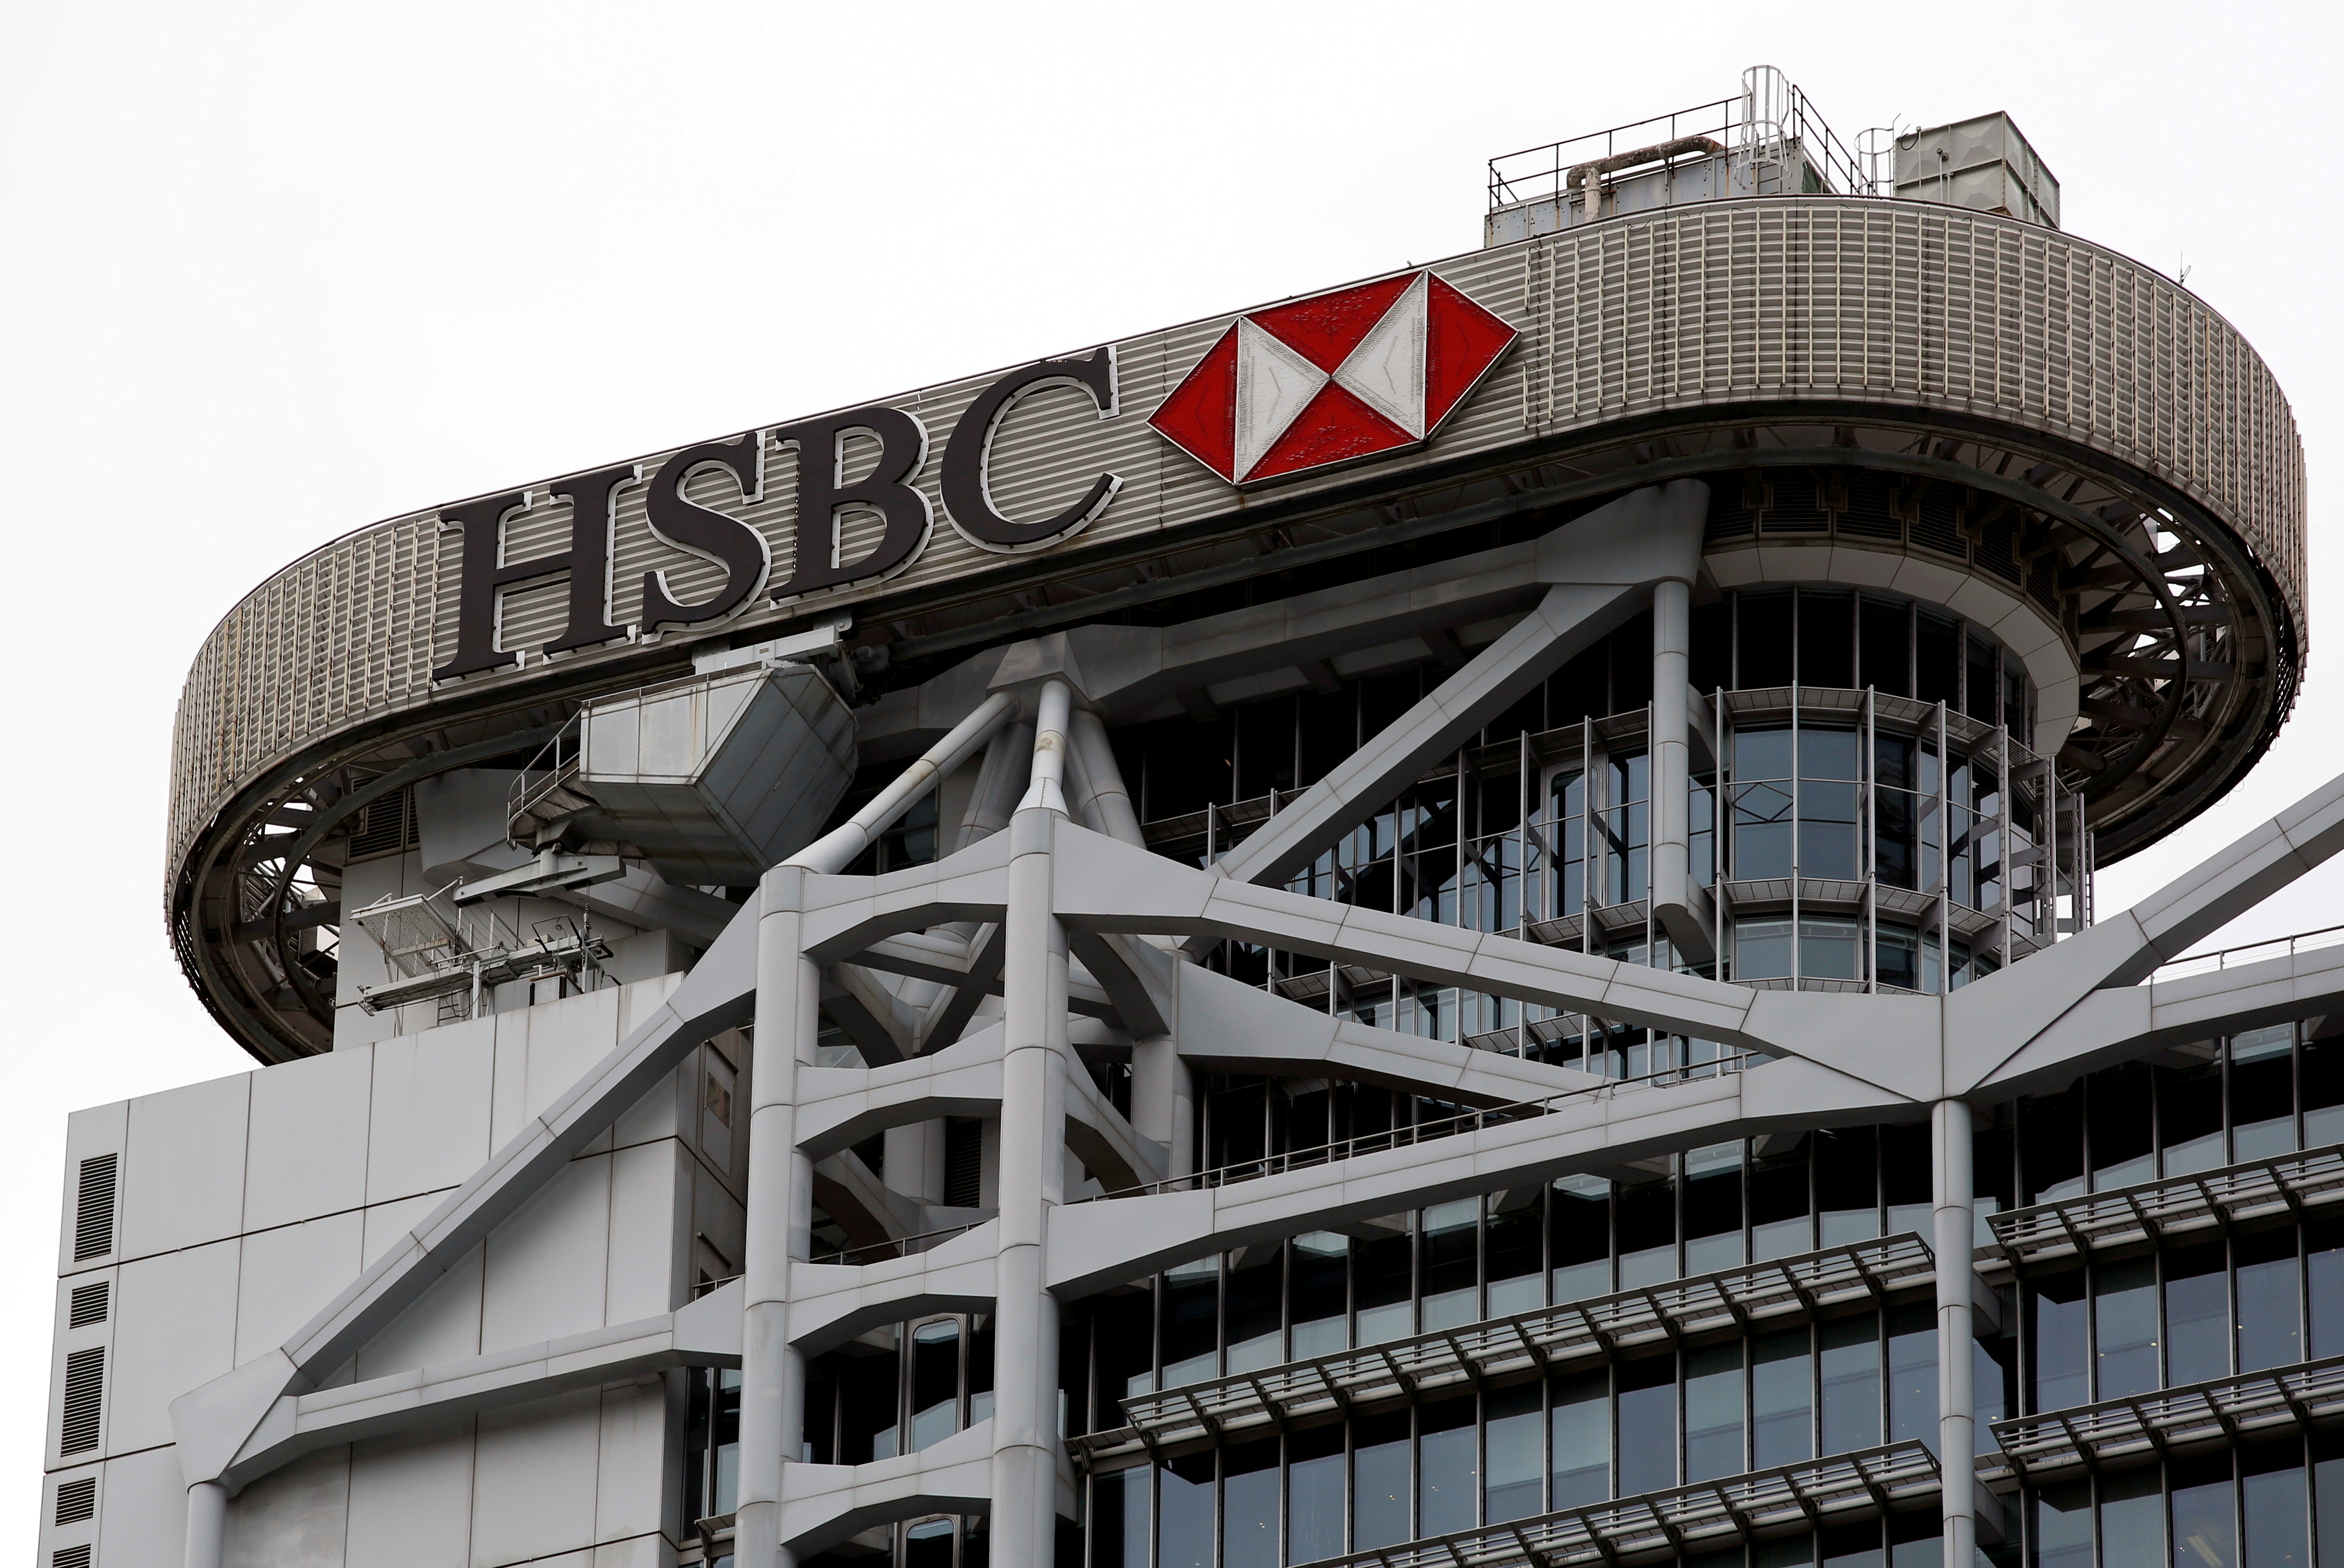 Epinglé pour « Greenwashing », HSBC doit retirer des publicités jugées mensongères au Royaume-Uni